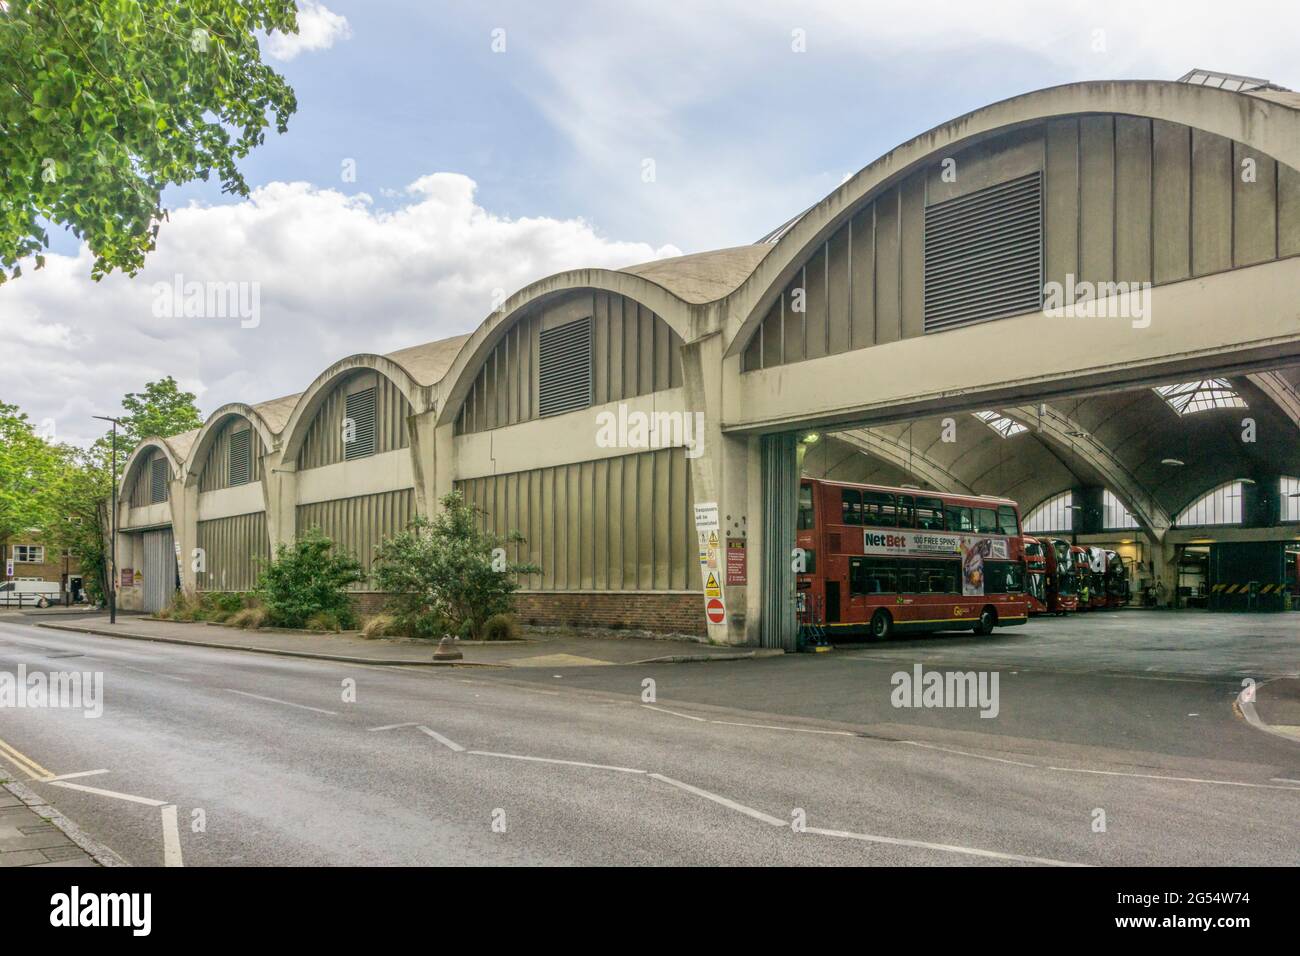 El grado II * enumeradas, hormigón armado, Stockwell garaje de autobuses más grande de Europa tenían techo incompatible span cuando abrió en 1952. Foto de stock